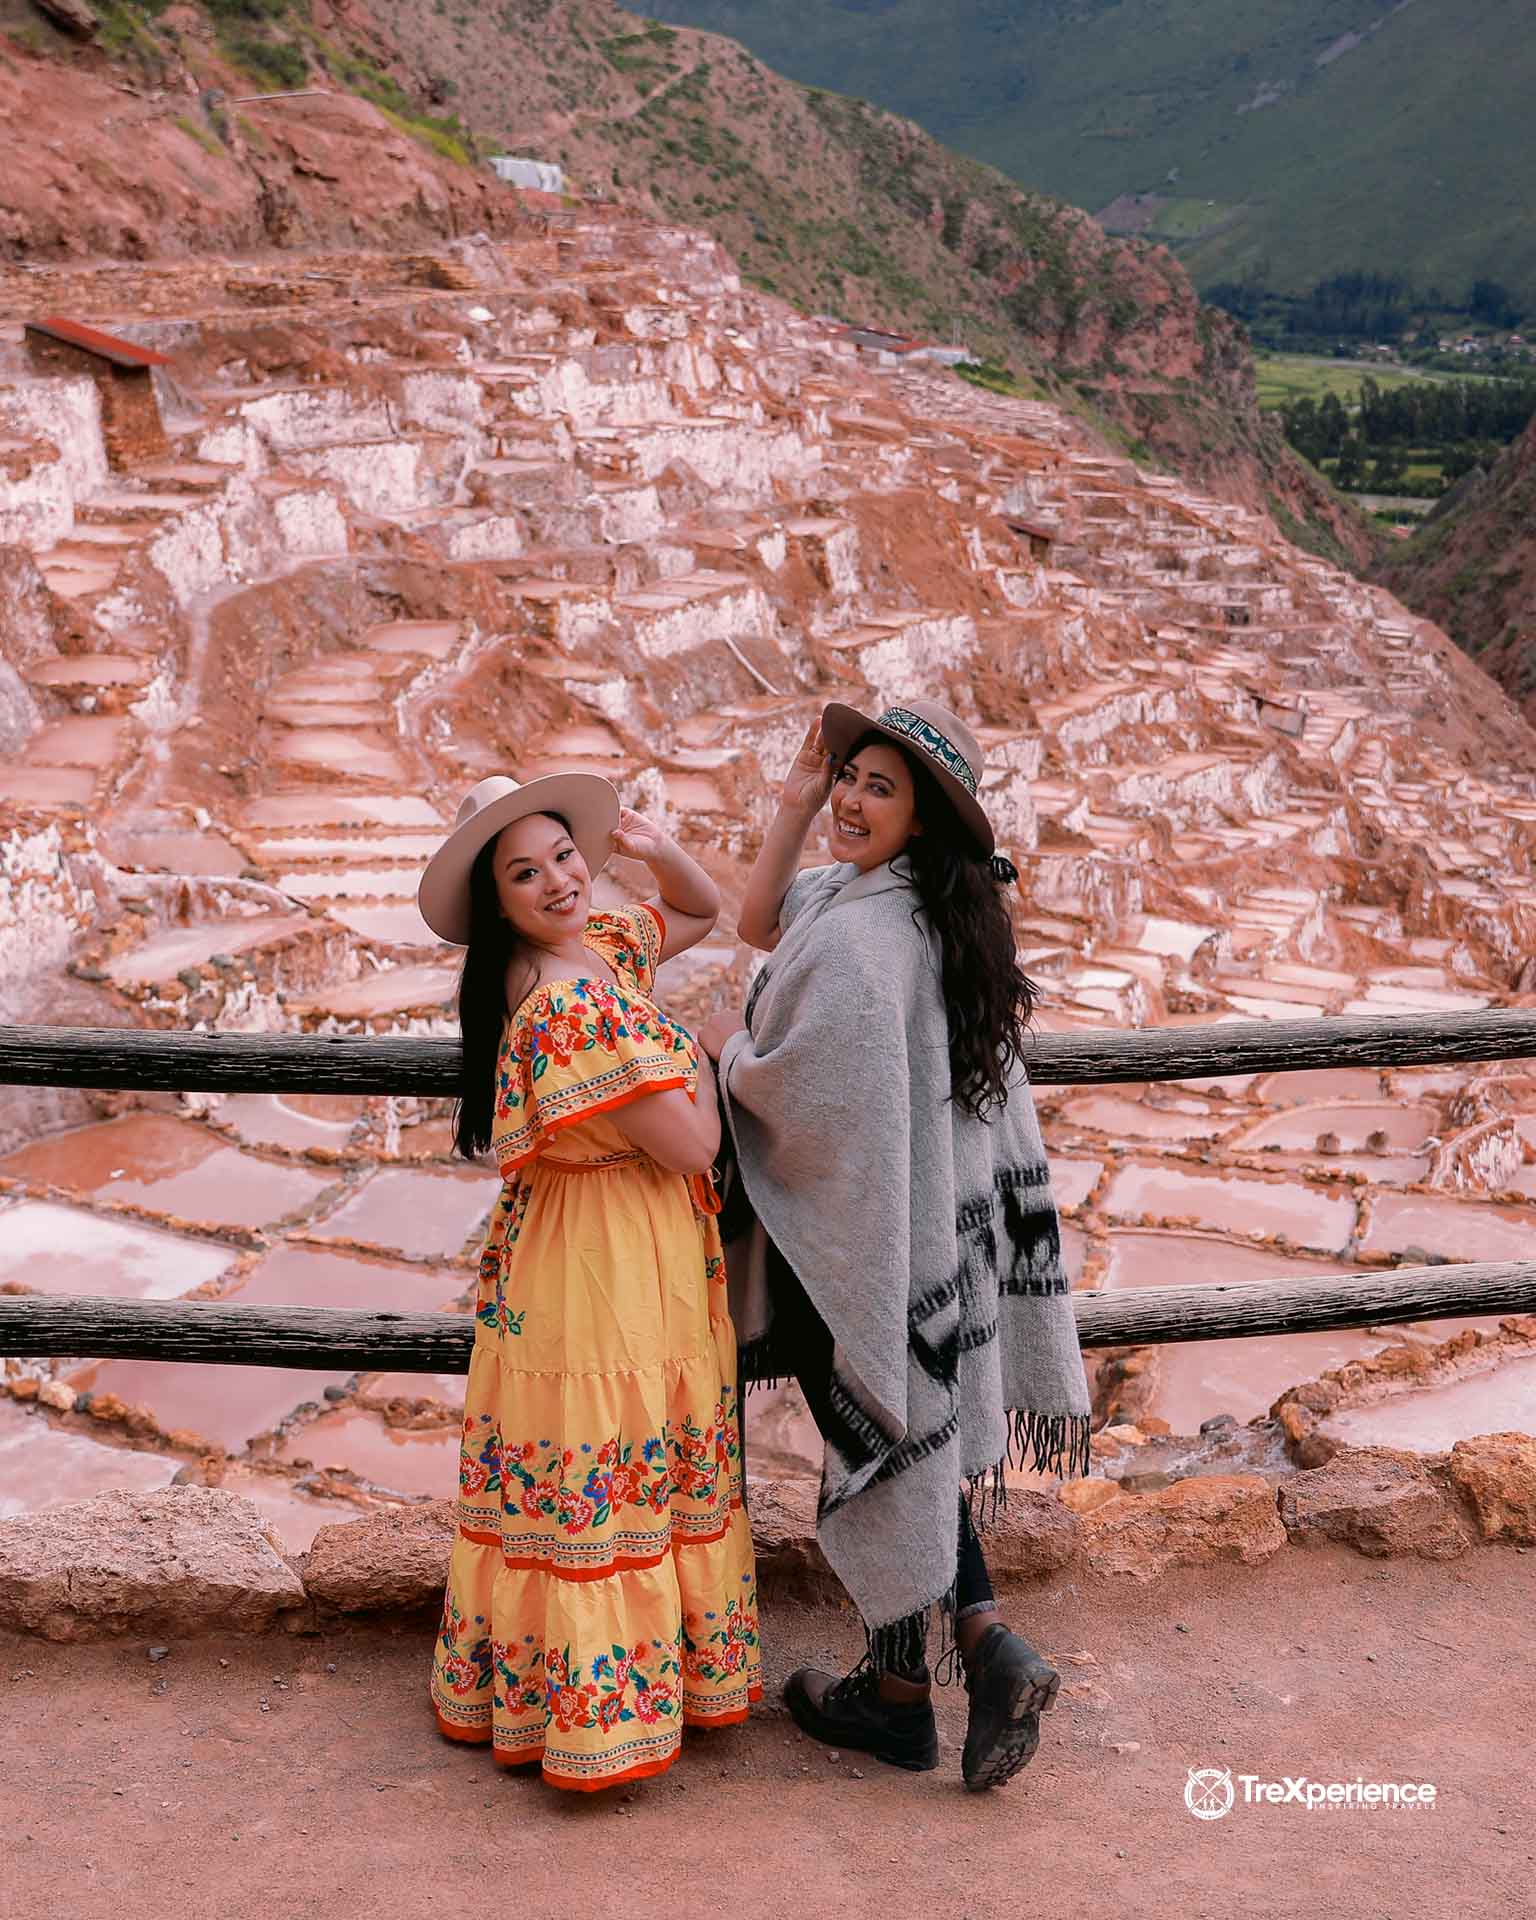 Maras salt Mines in Cusco Peru | TreXperience